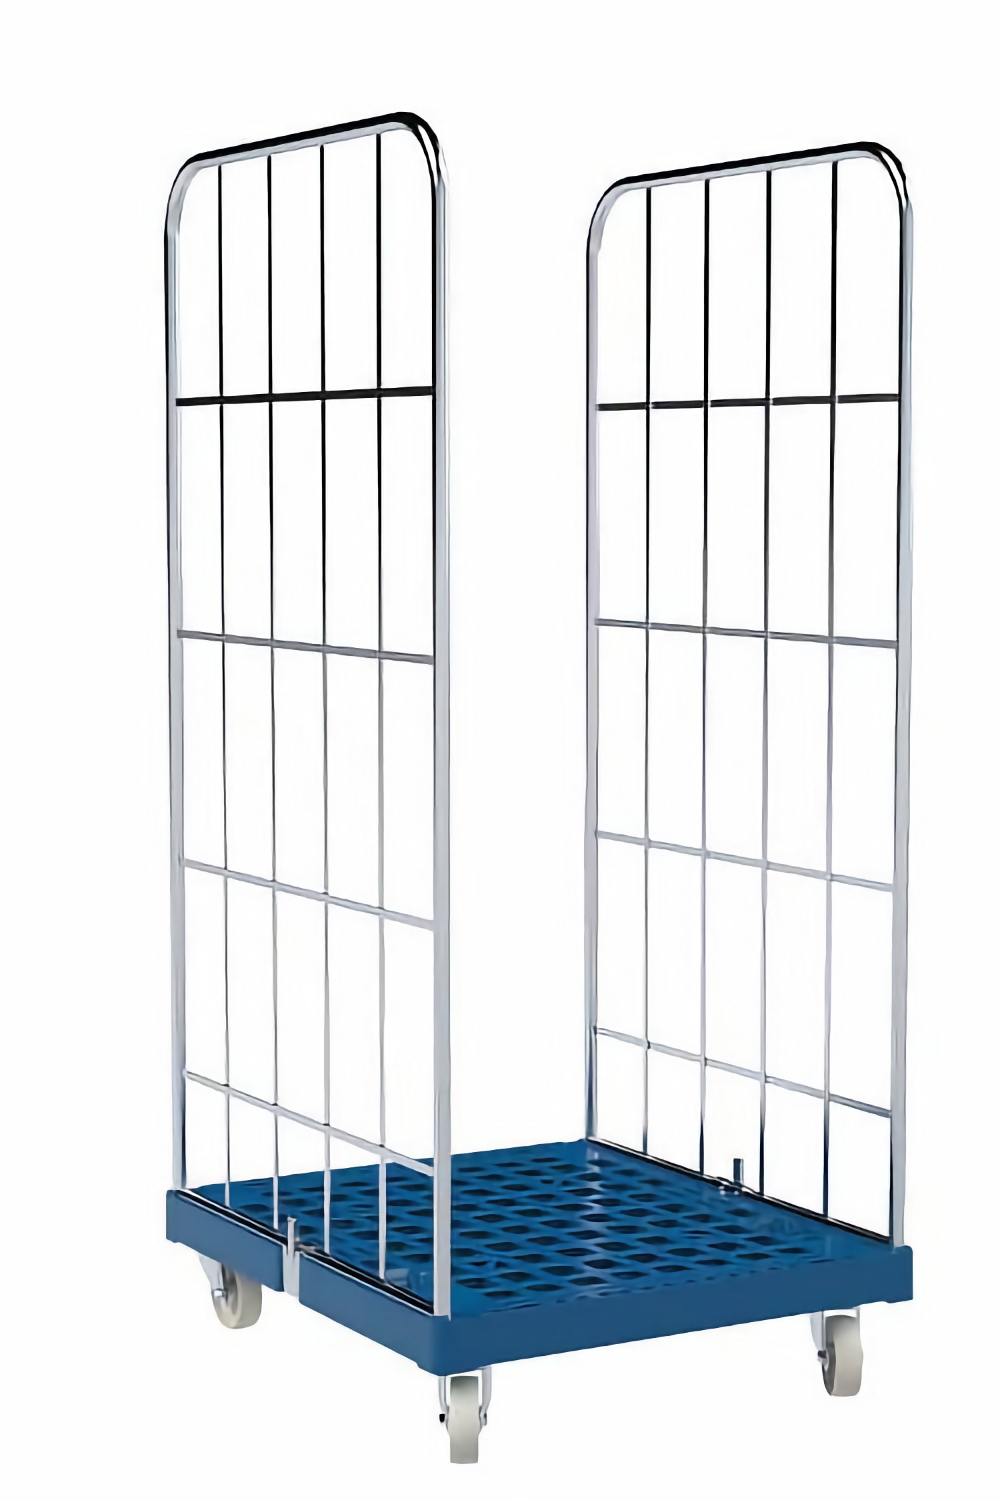 Rollbehälter mit Gitterwänden,2-seitig, Nutzhöhe 1460 mm, Plattform 724x815 mm, enzianblau